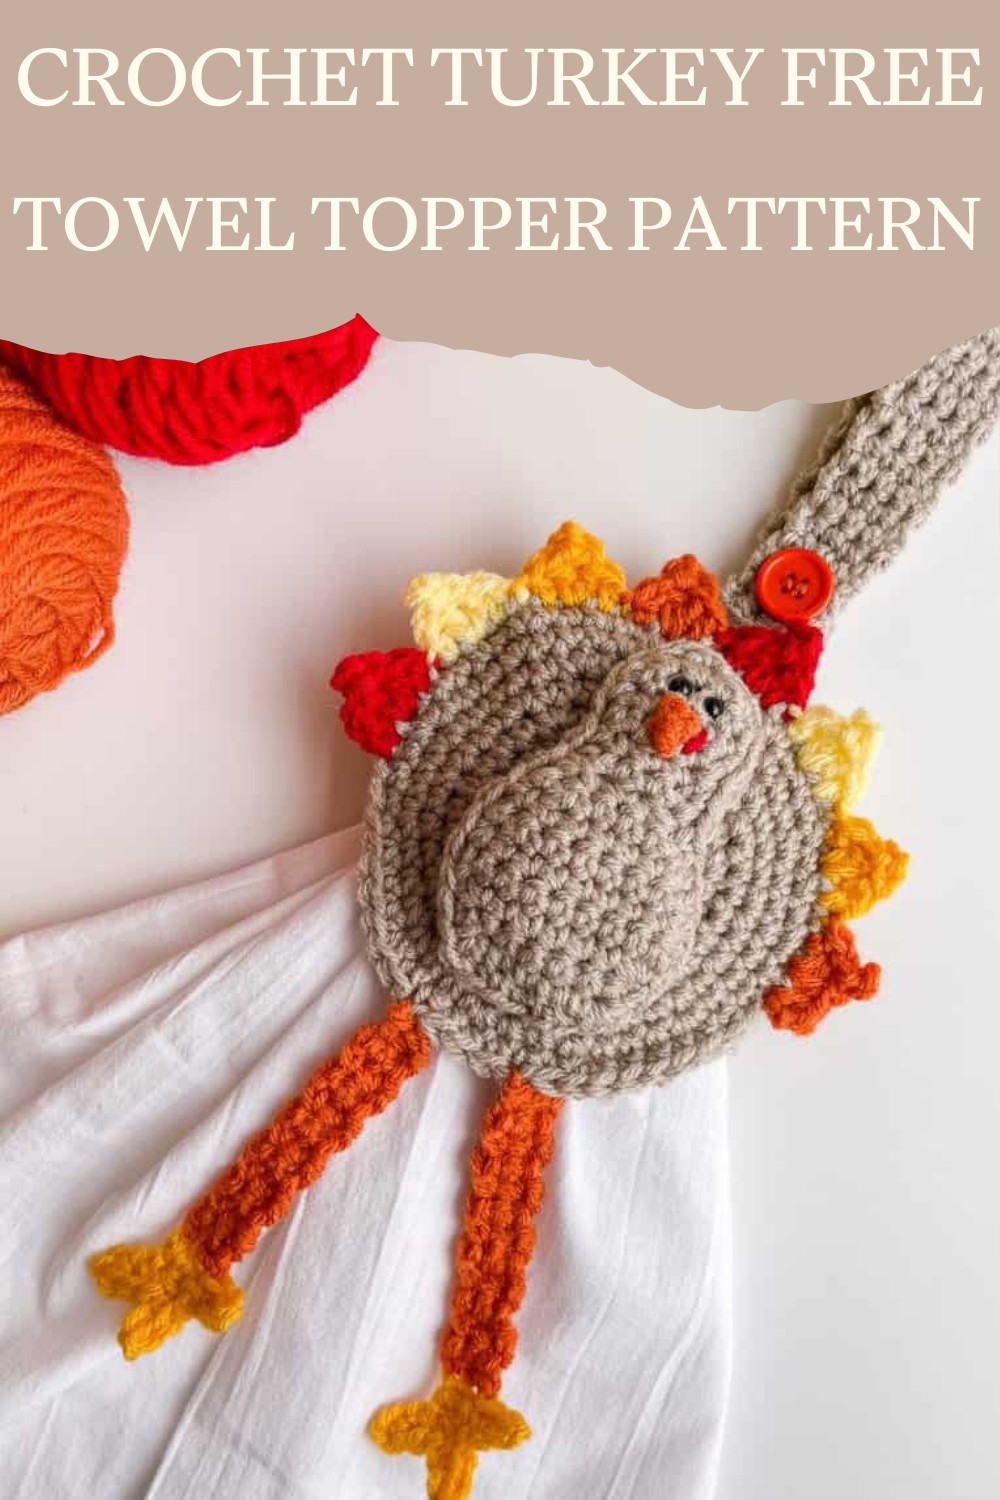 Crochet Turkey Free Towel Topper Pattern